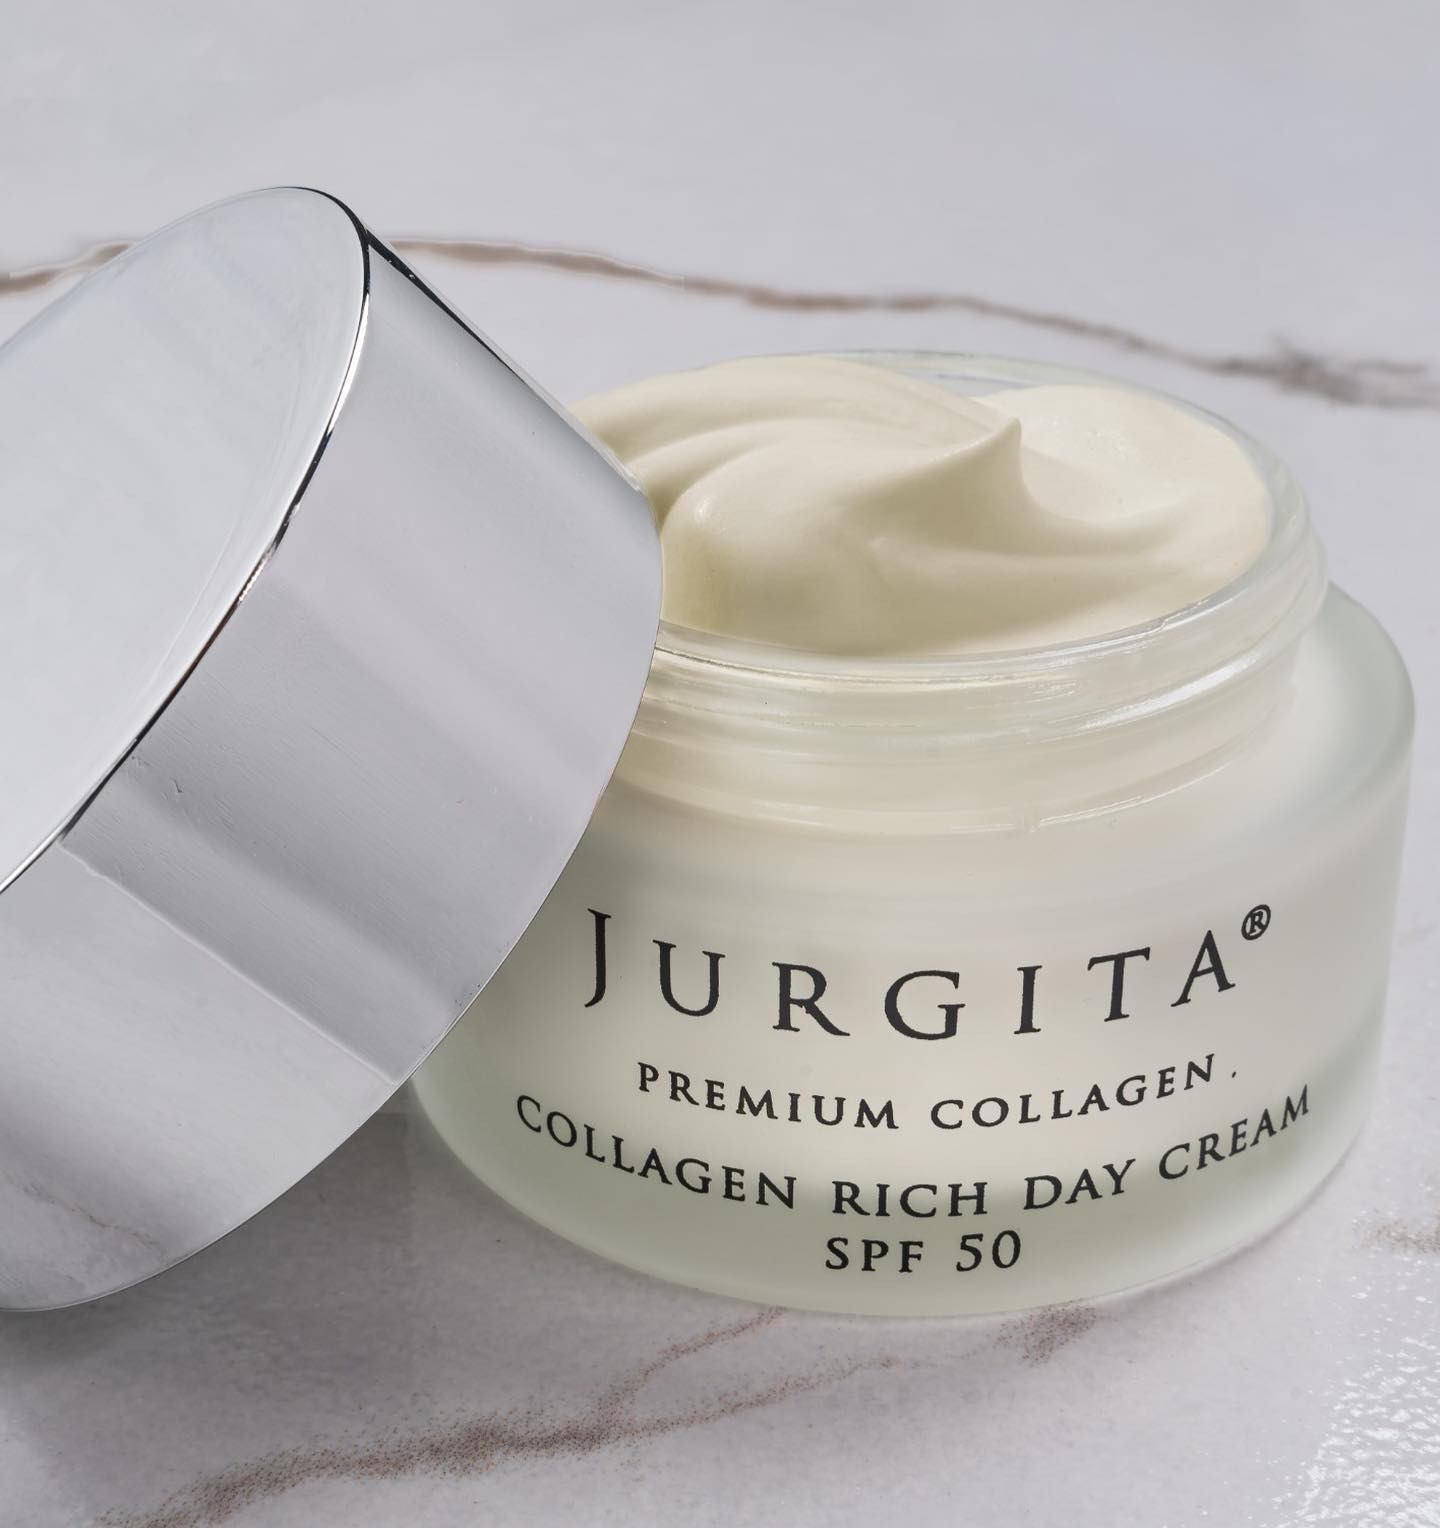 Collagen Day Cream SPF 50, crema viso studiata per prevenire e contrastare i segni dell’invecchiamento